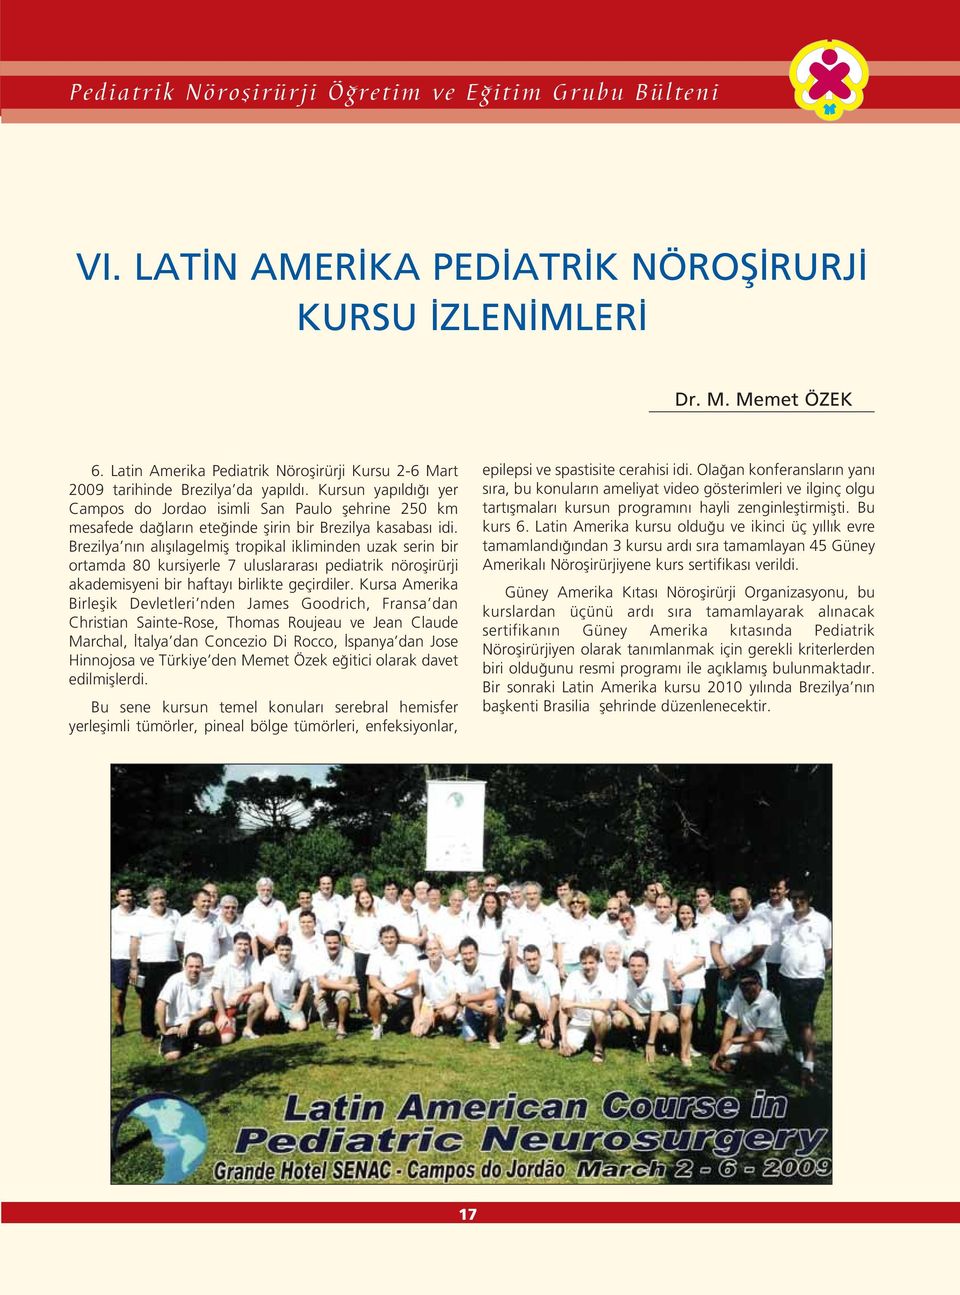 Brezilya n n al fl lagelmifl tropikal ikliminden uzak serin bir ortamda 80 kursiyerle 7 uluslararas pediatrik nöroflirürji akademisyeni bir haftay birlikte geçirdiler.